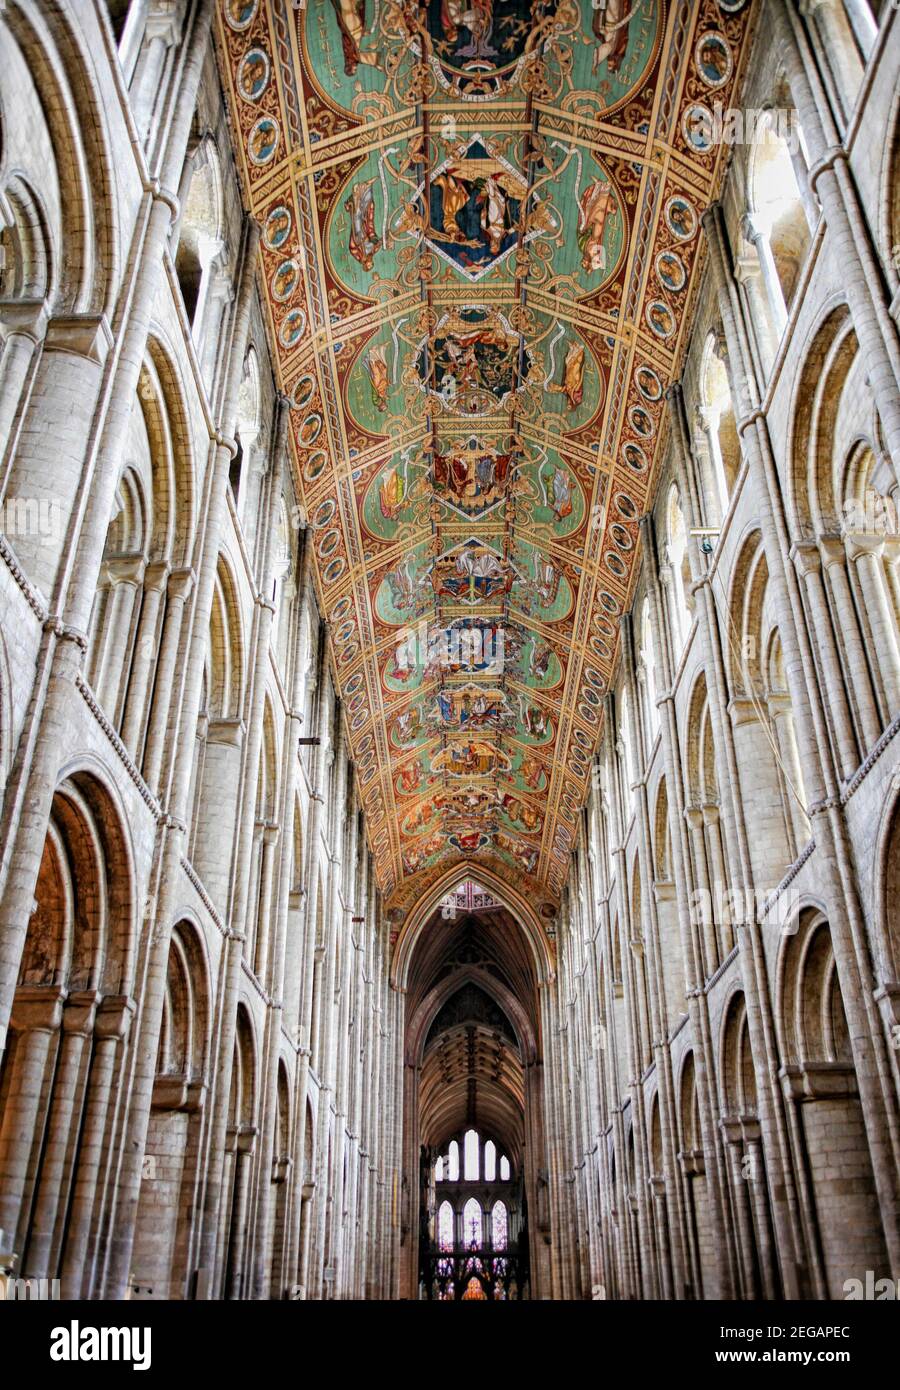 Magnifique plafond en bois sculpté et peint de la cathédrale d'Ely à Ely,  Cambridgeshire, Angleterre Photo Stock - Alamy